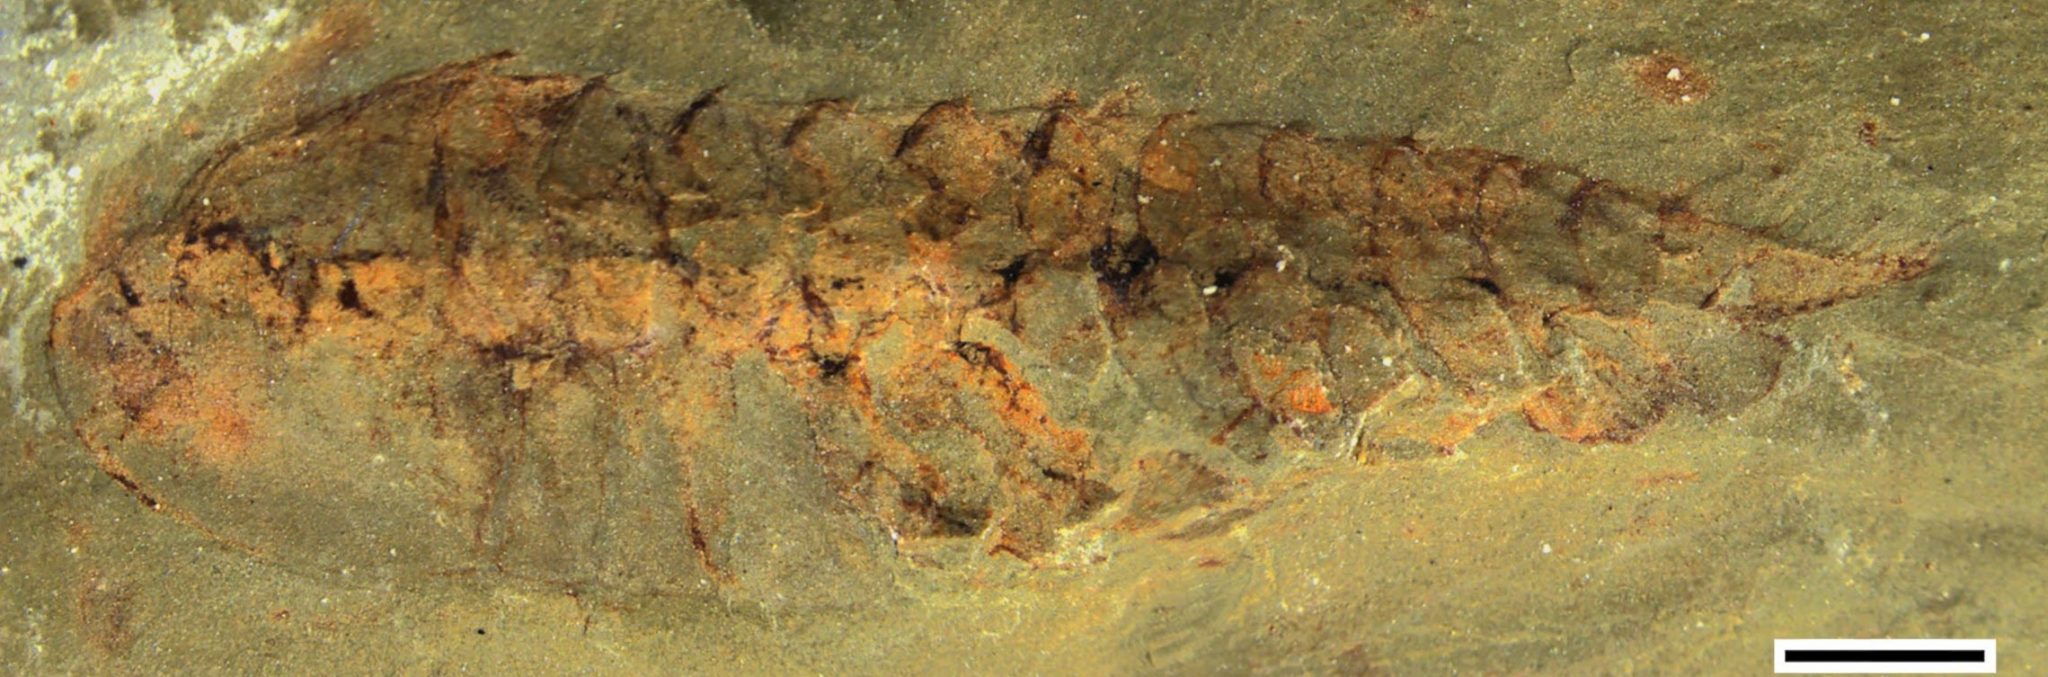 中国贵州省凯里发现的保存完好的化石揭示5亿年前节肢动物祖先的大脑